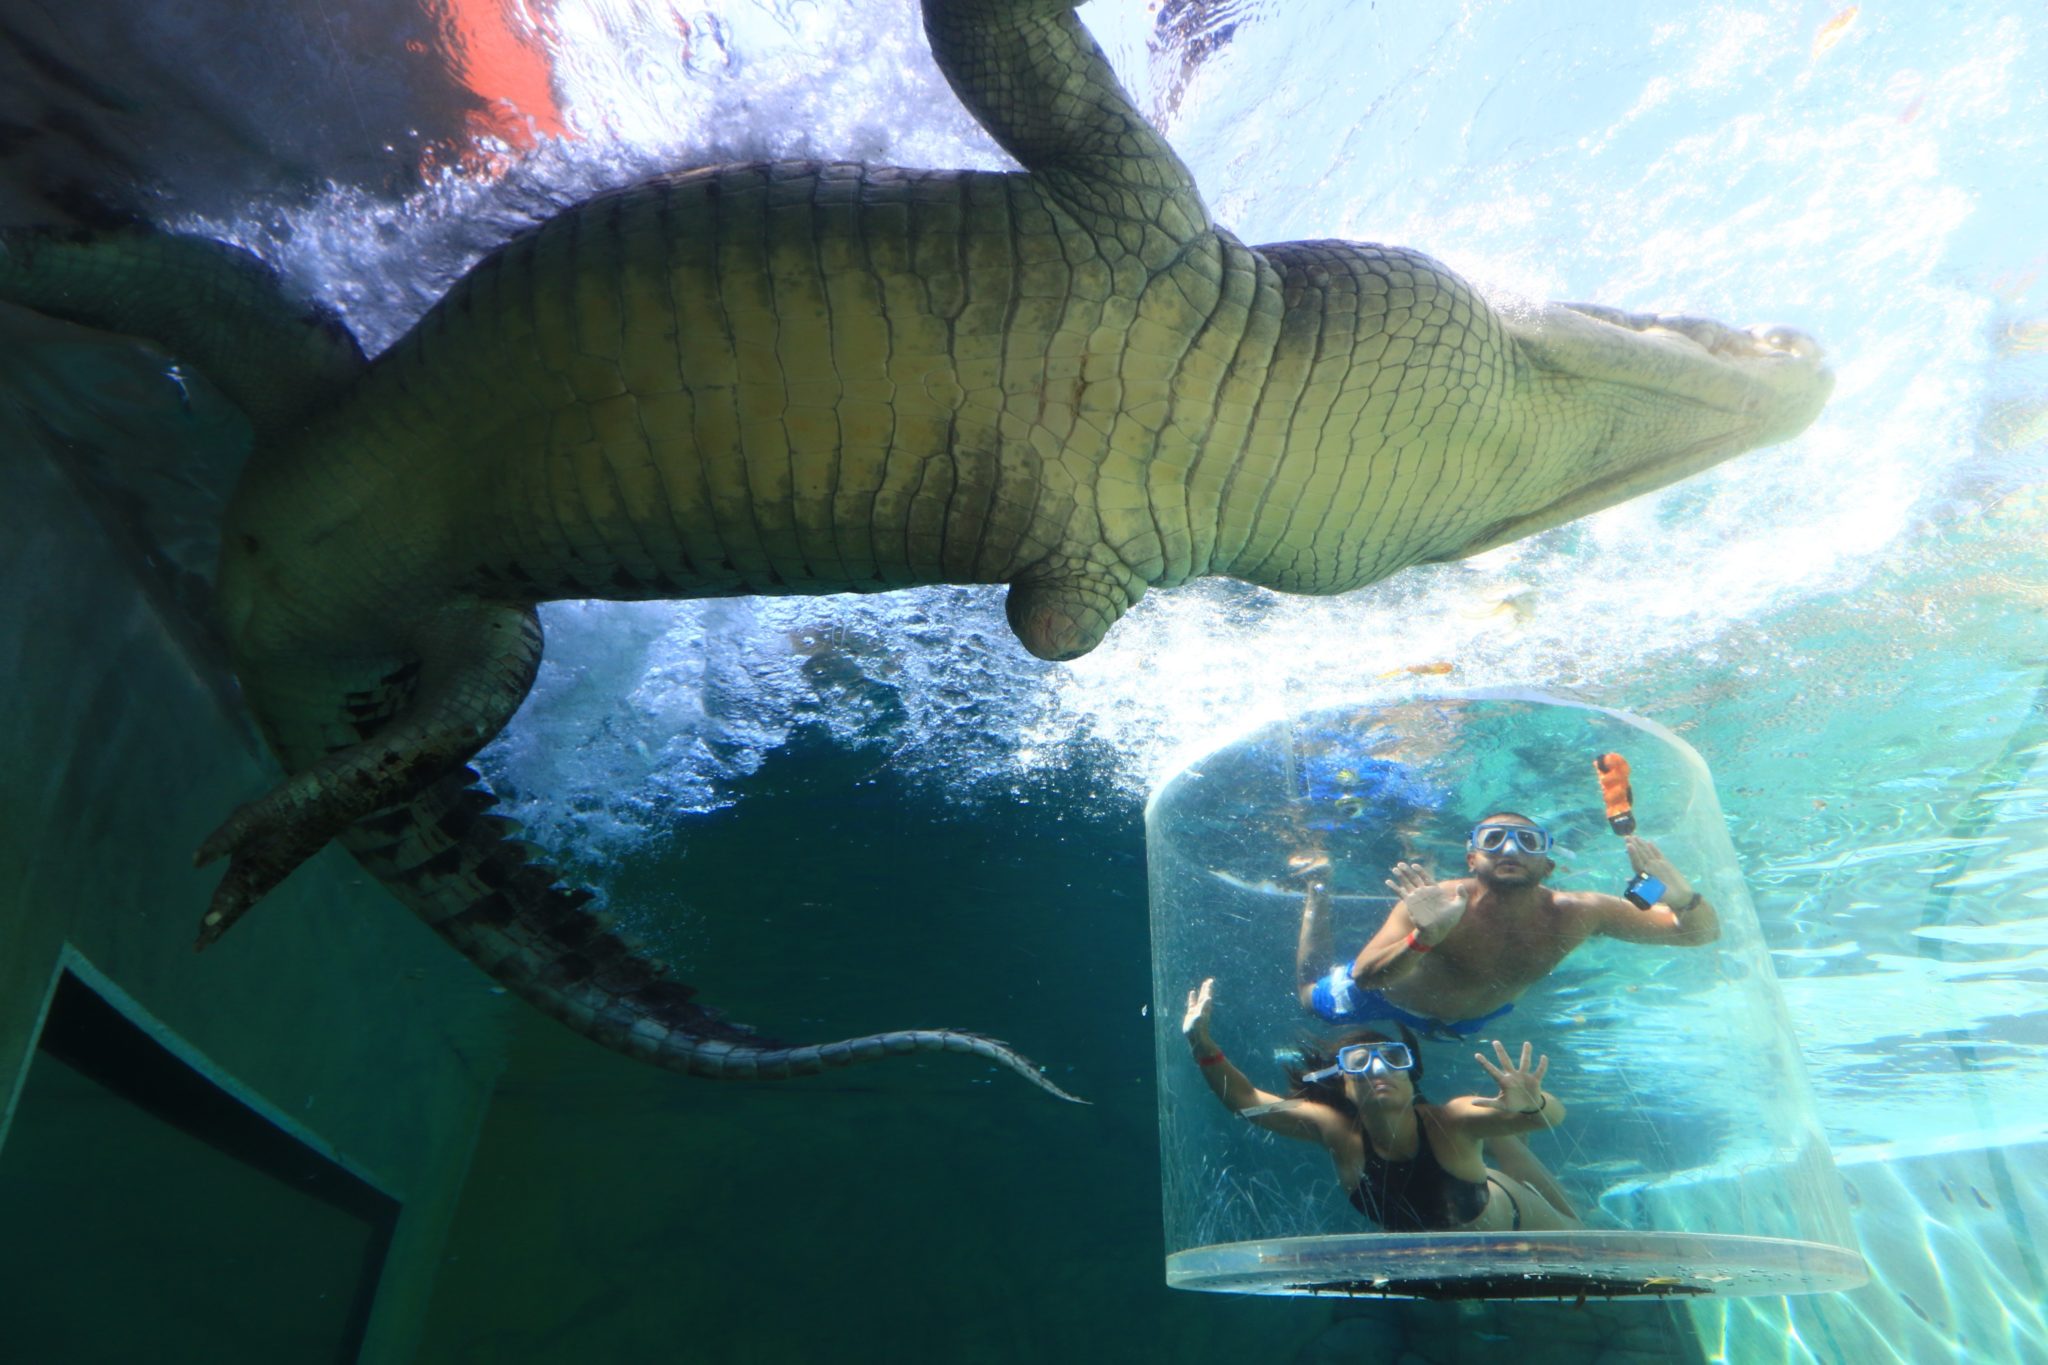 a crocodile swimming in a tank